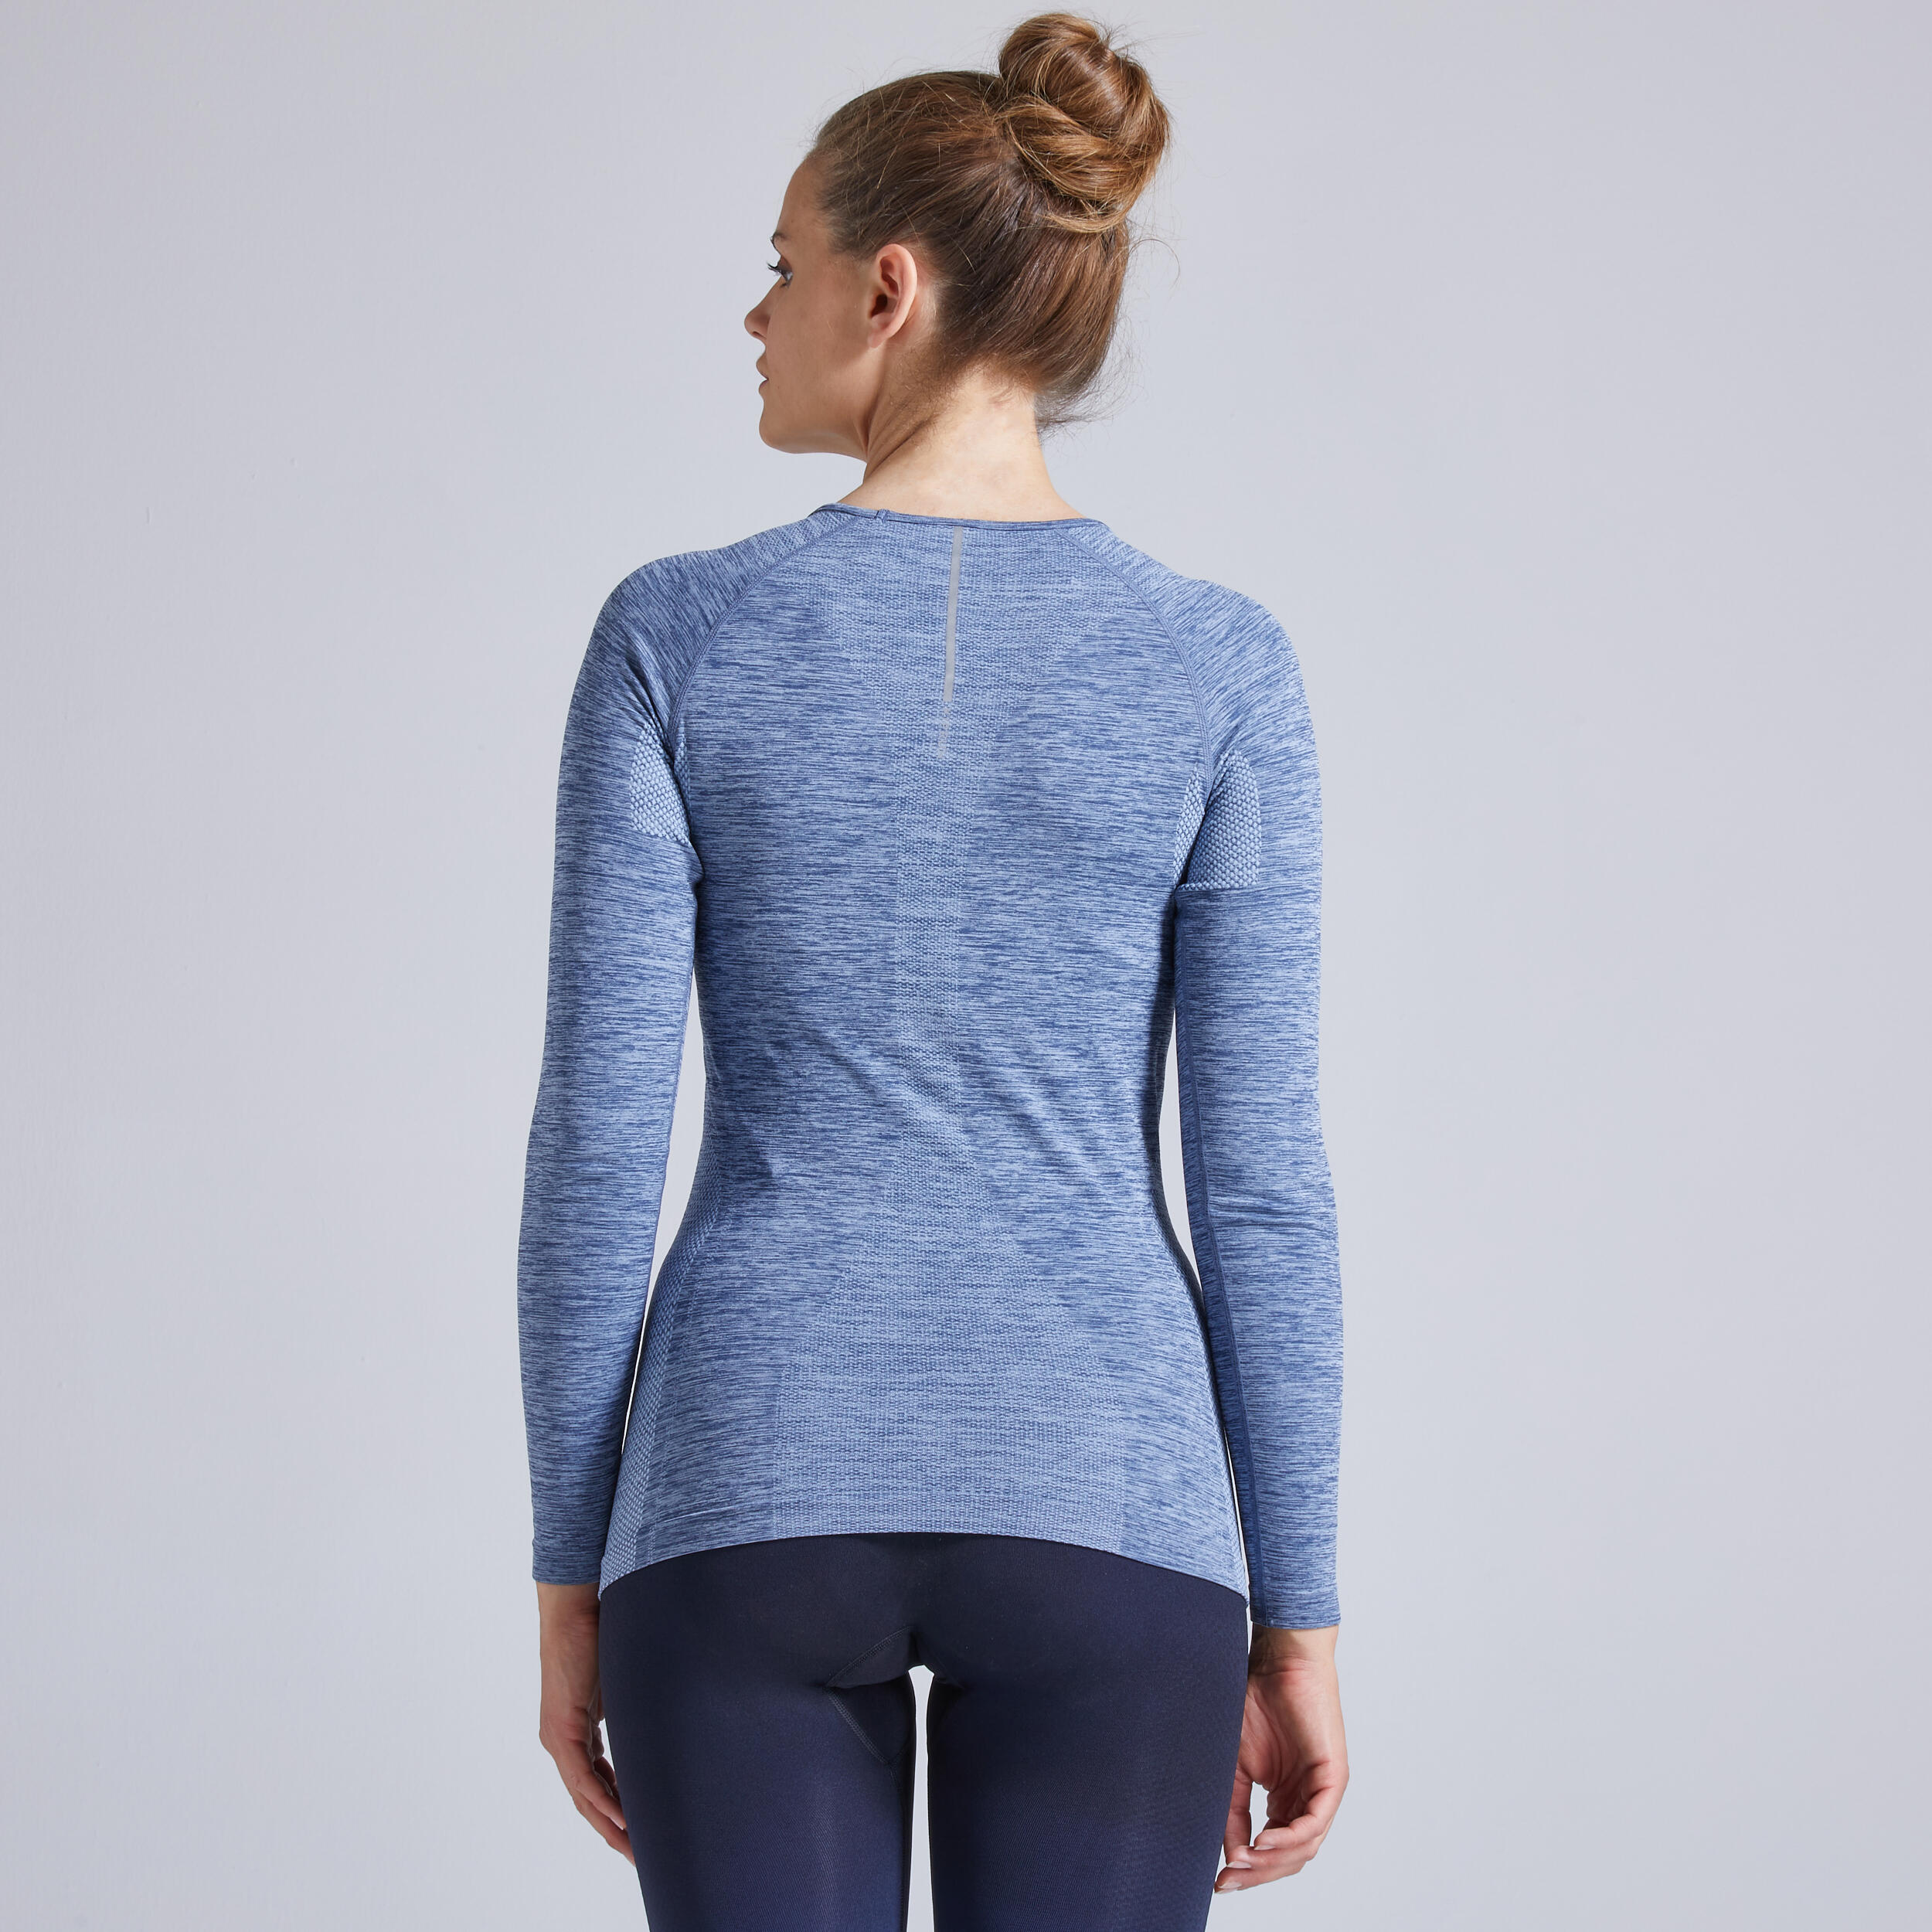 Kiprun Skincare Light Women's Running Breathable Long-Sleeved T-Shirt - slate 4/7